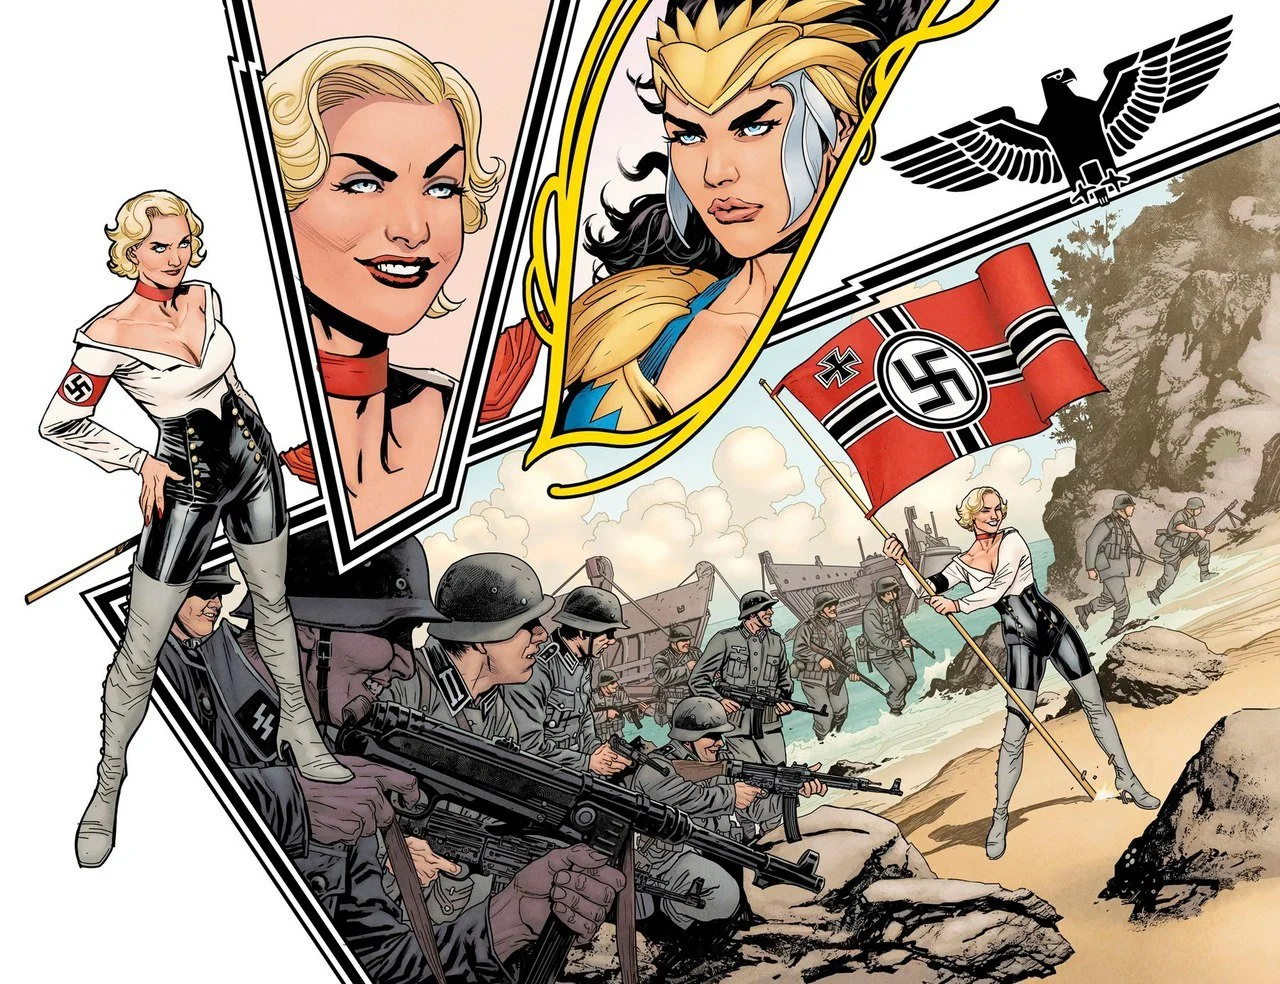 В новом комиксе о Чудо-женщине амазонки сражаются против нацистов - фото 1